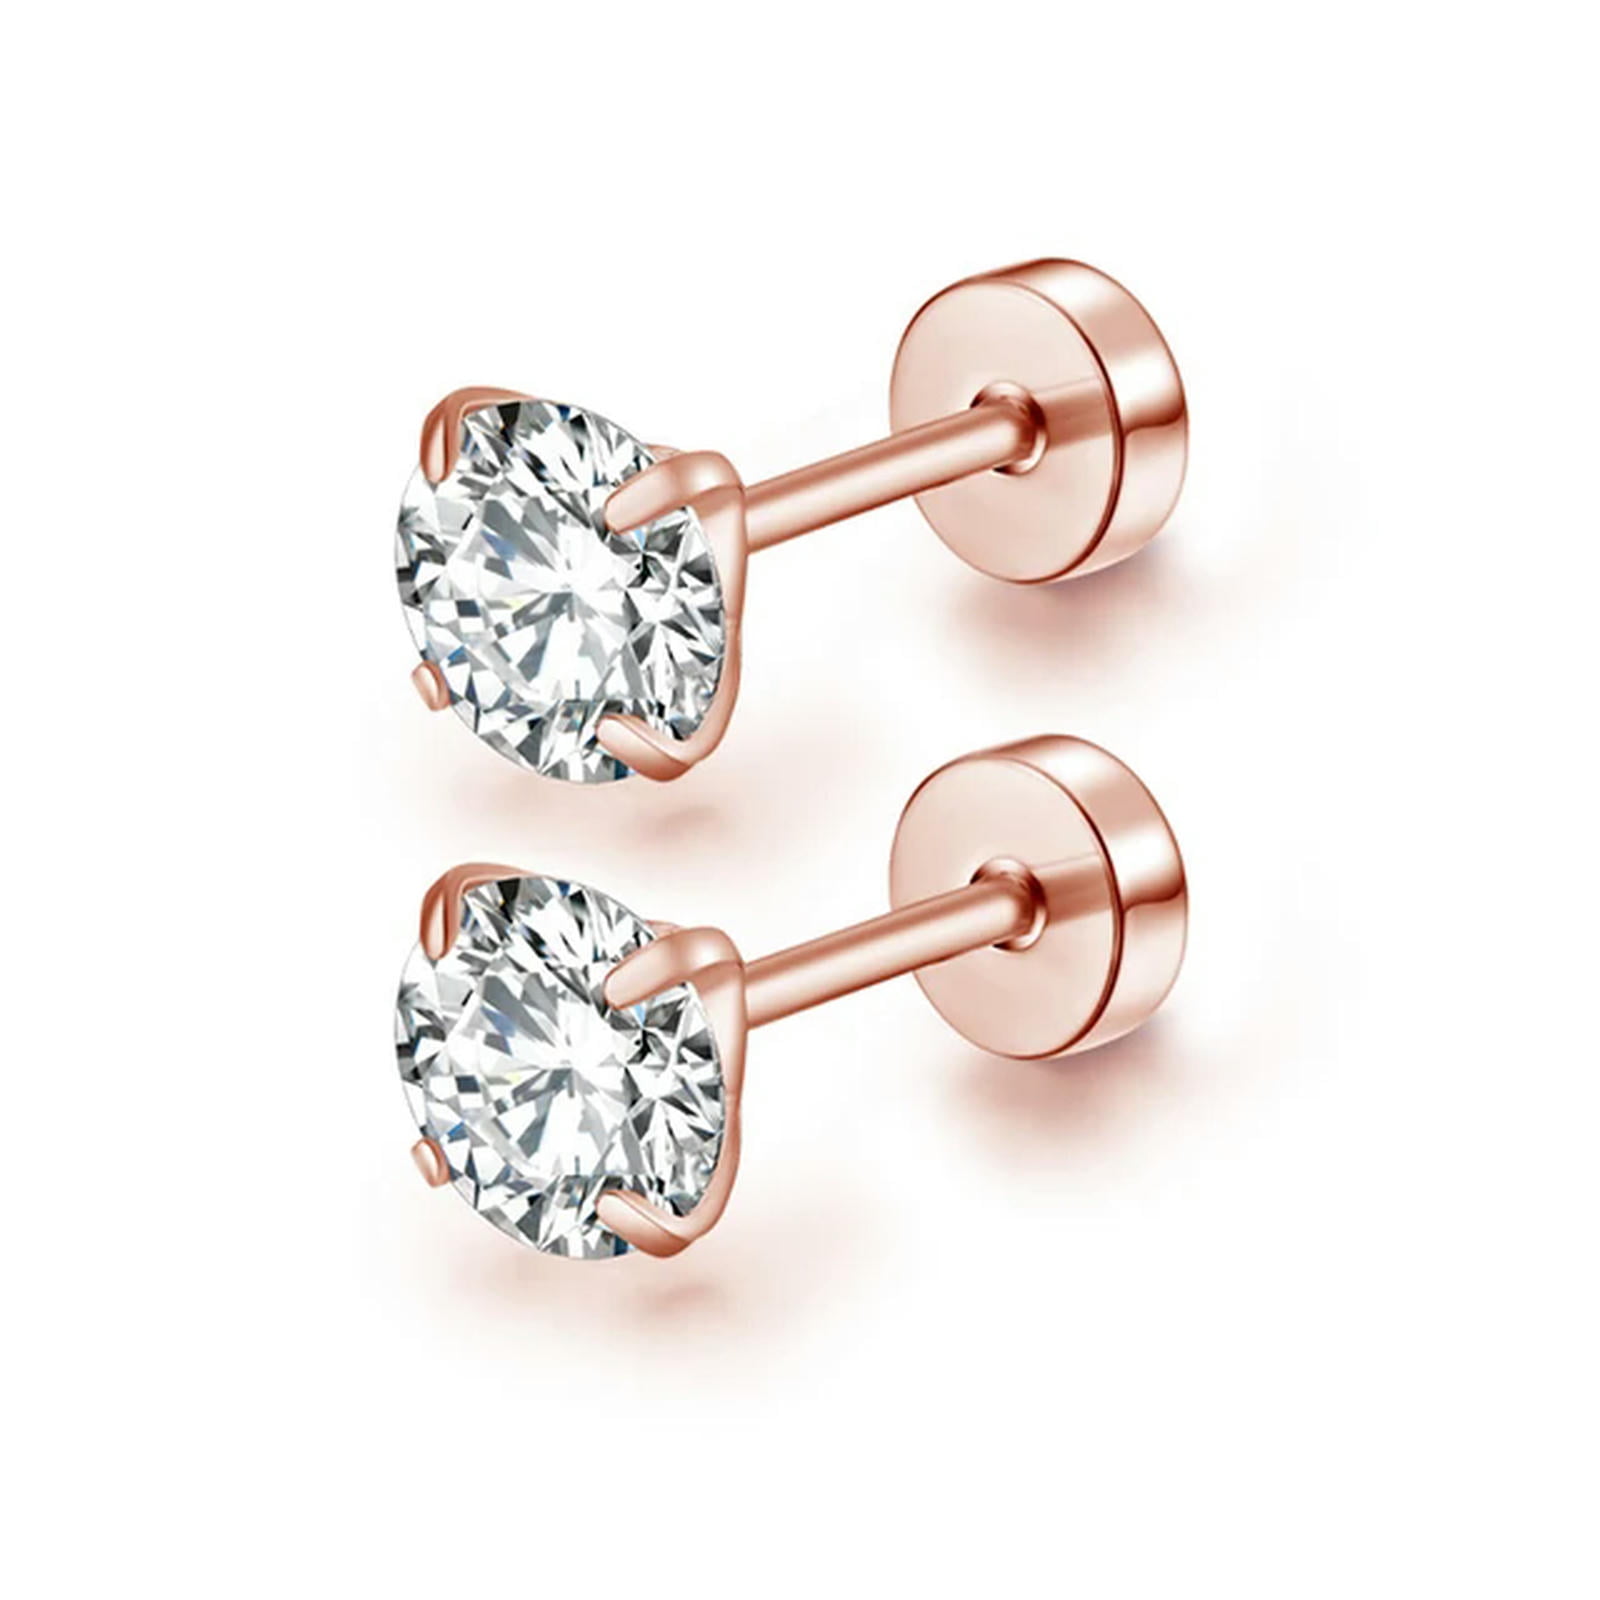 1Pair Stainless Steel 2-8Mm Crystal Ear Piercing Stud Earrings Cz Women ...